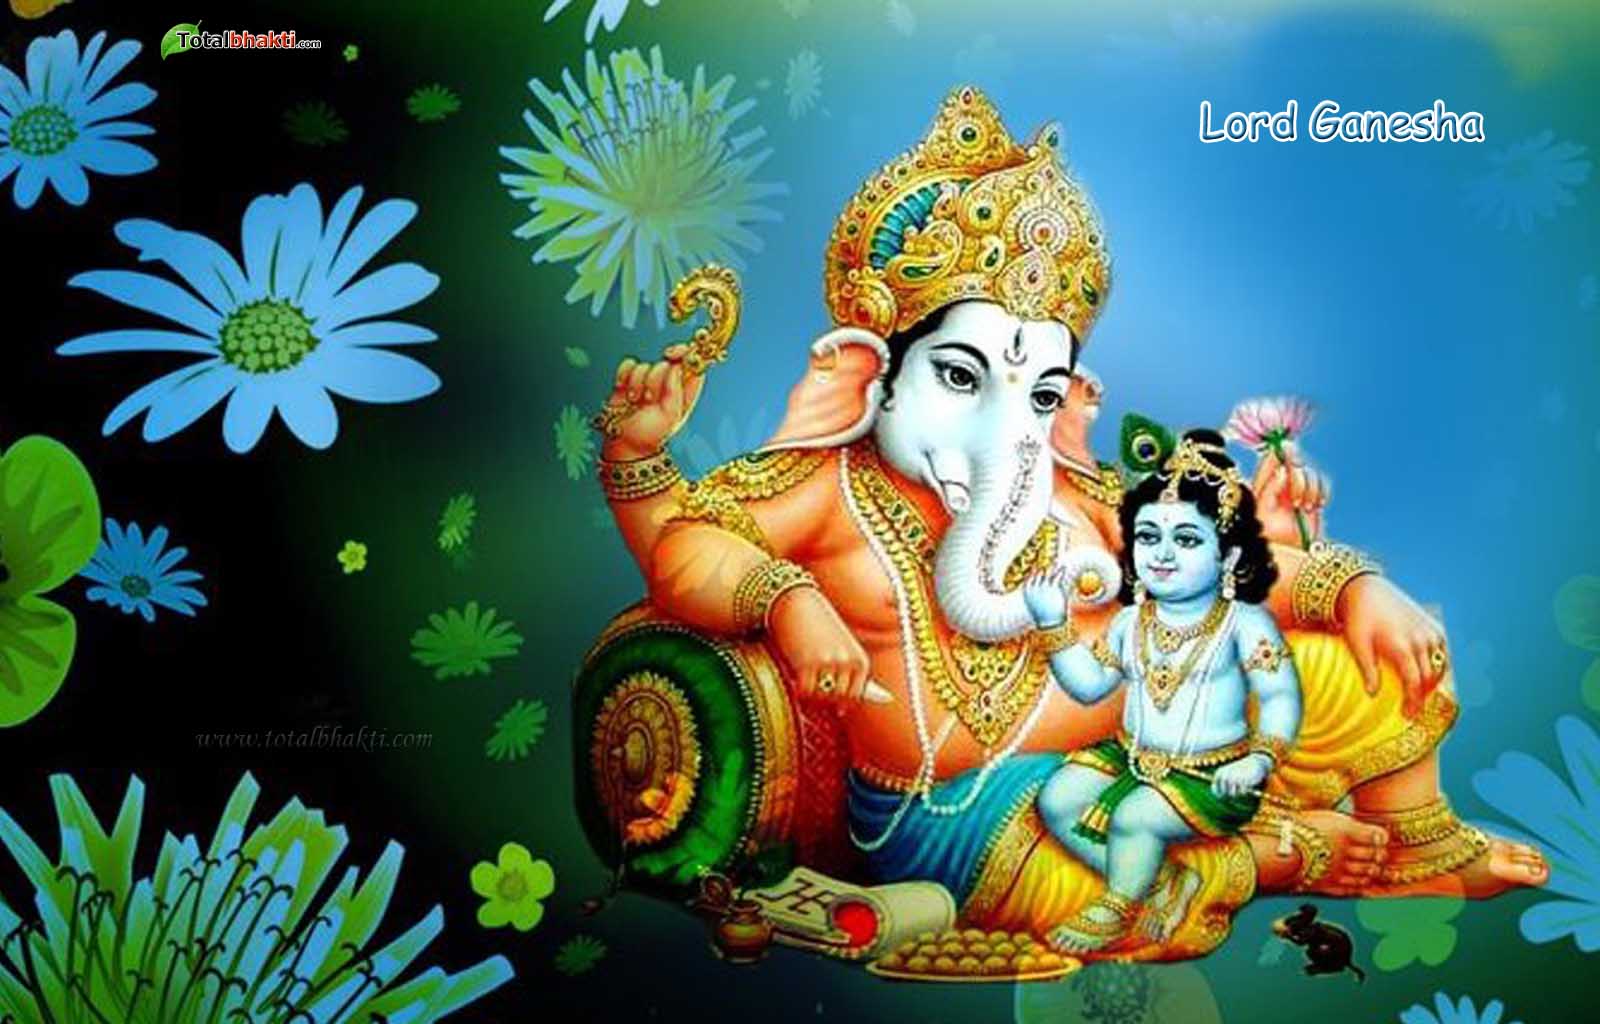 God Vinayaka Wallpapers - Lord Ganesha And Lord Krishna , HD Wallpaper & Backgrounds